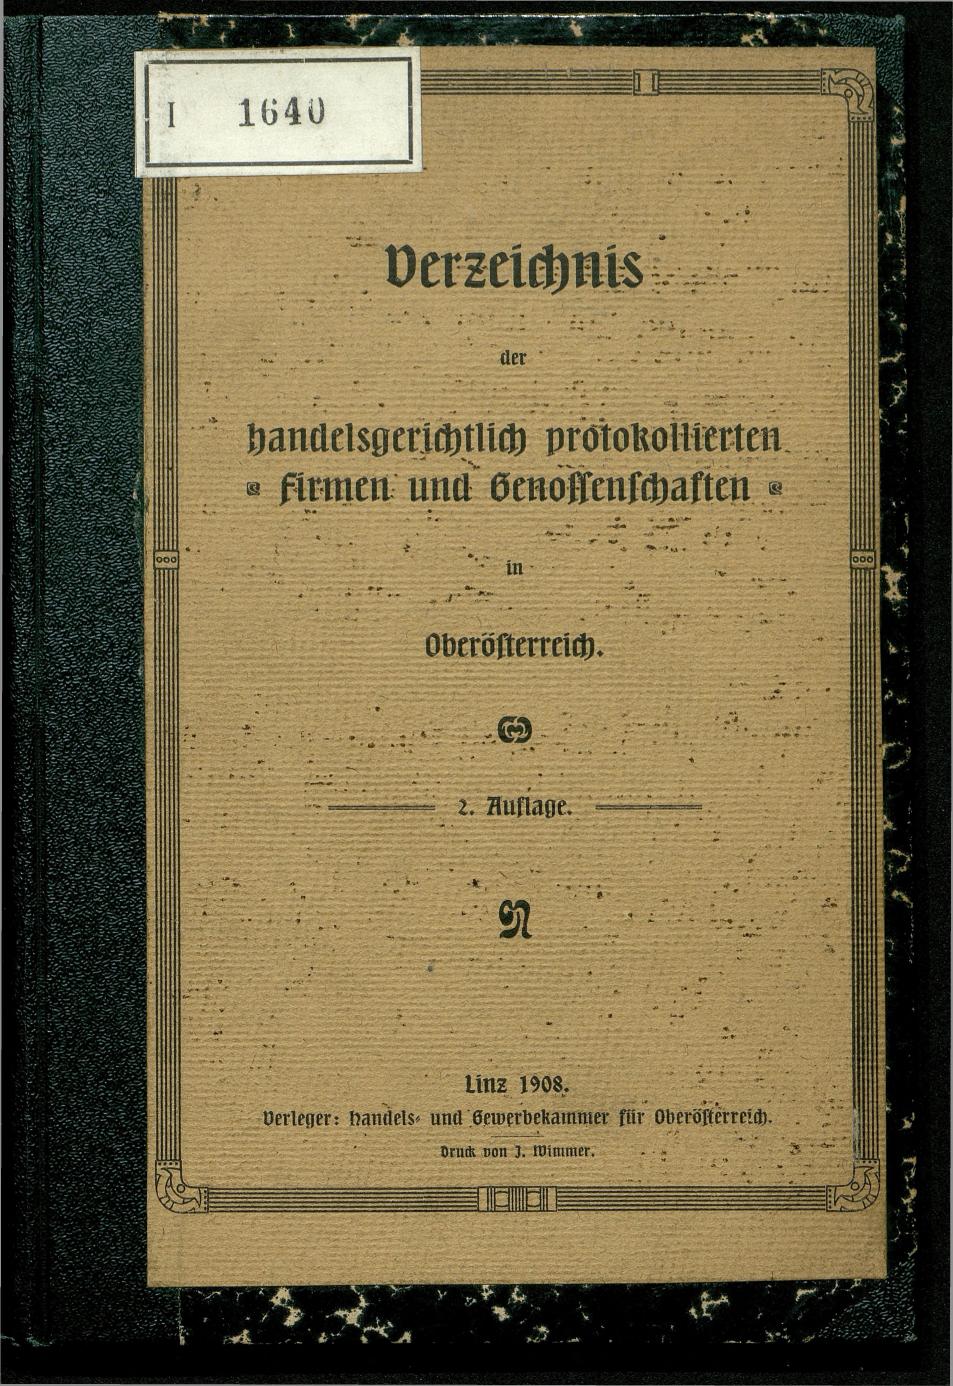 Verzeichnis der protokollierten Firmen und Genossenschaften in Oberösterreich 1908 - Page 1